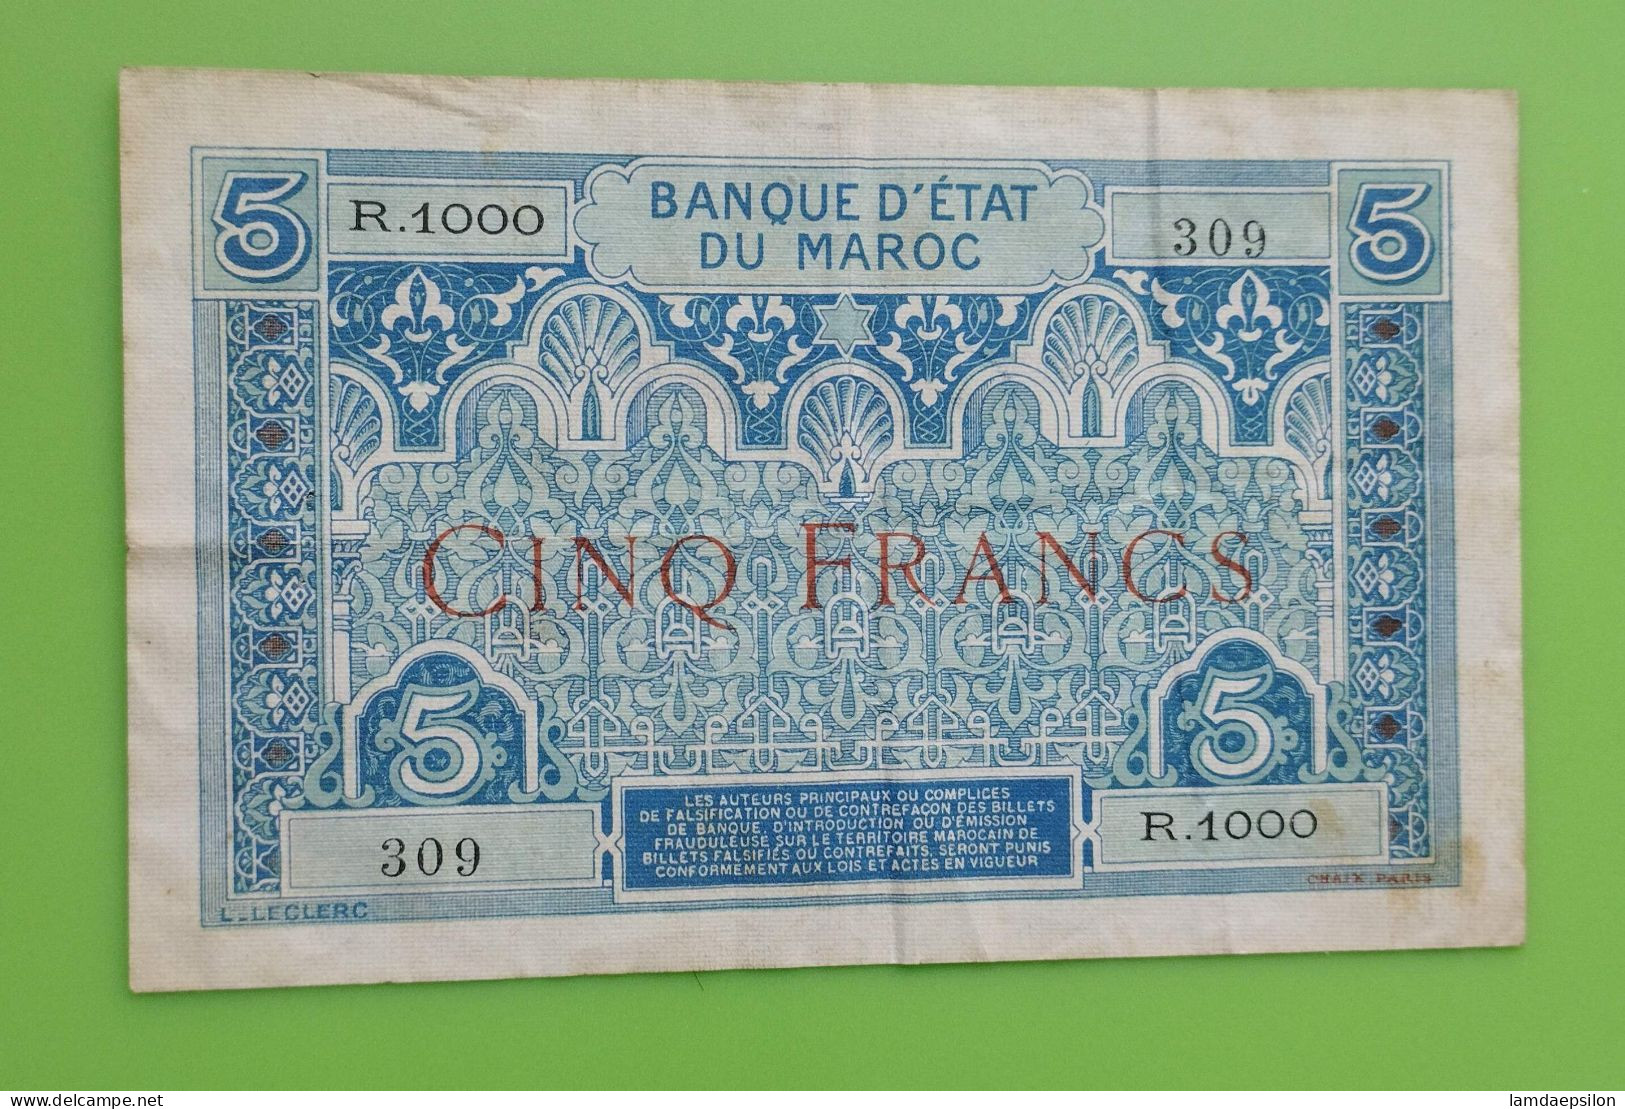 MAROC MOROCCO MARRUECOS MAROKKO BANQUE D'ETAT 5 FRANC 1924 RARE SIGNATURE - Marruecos